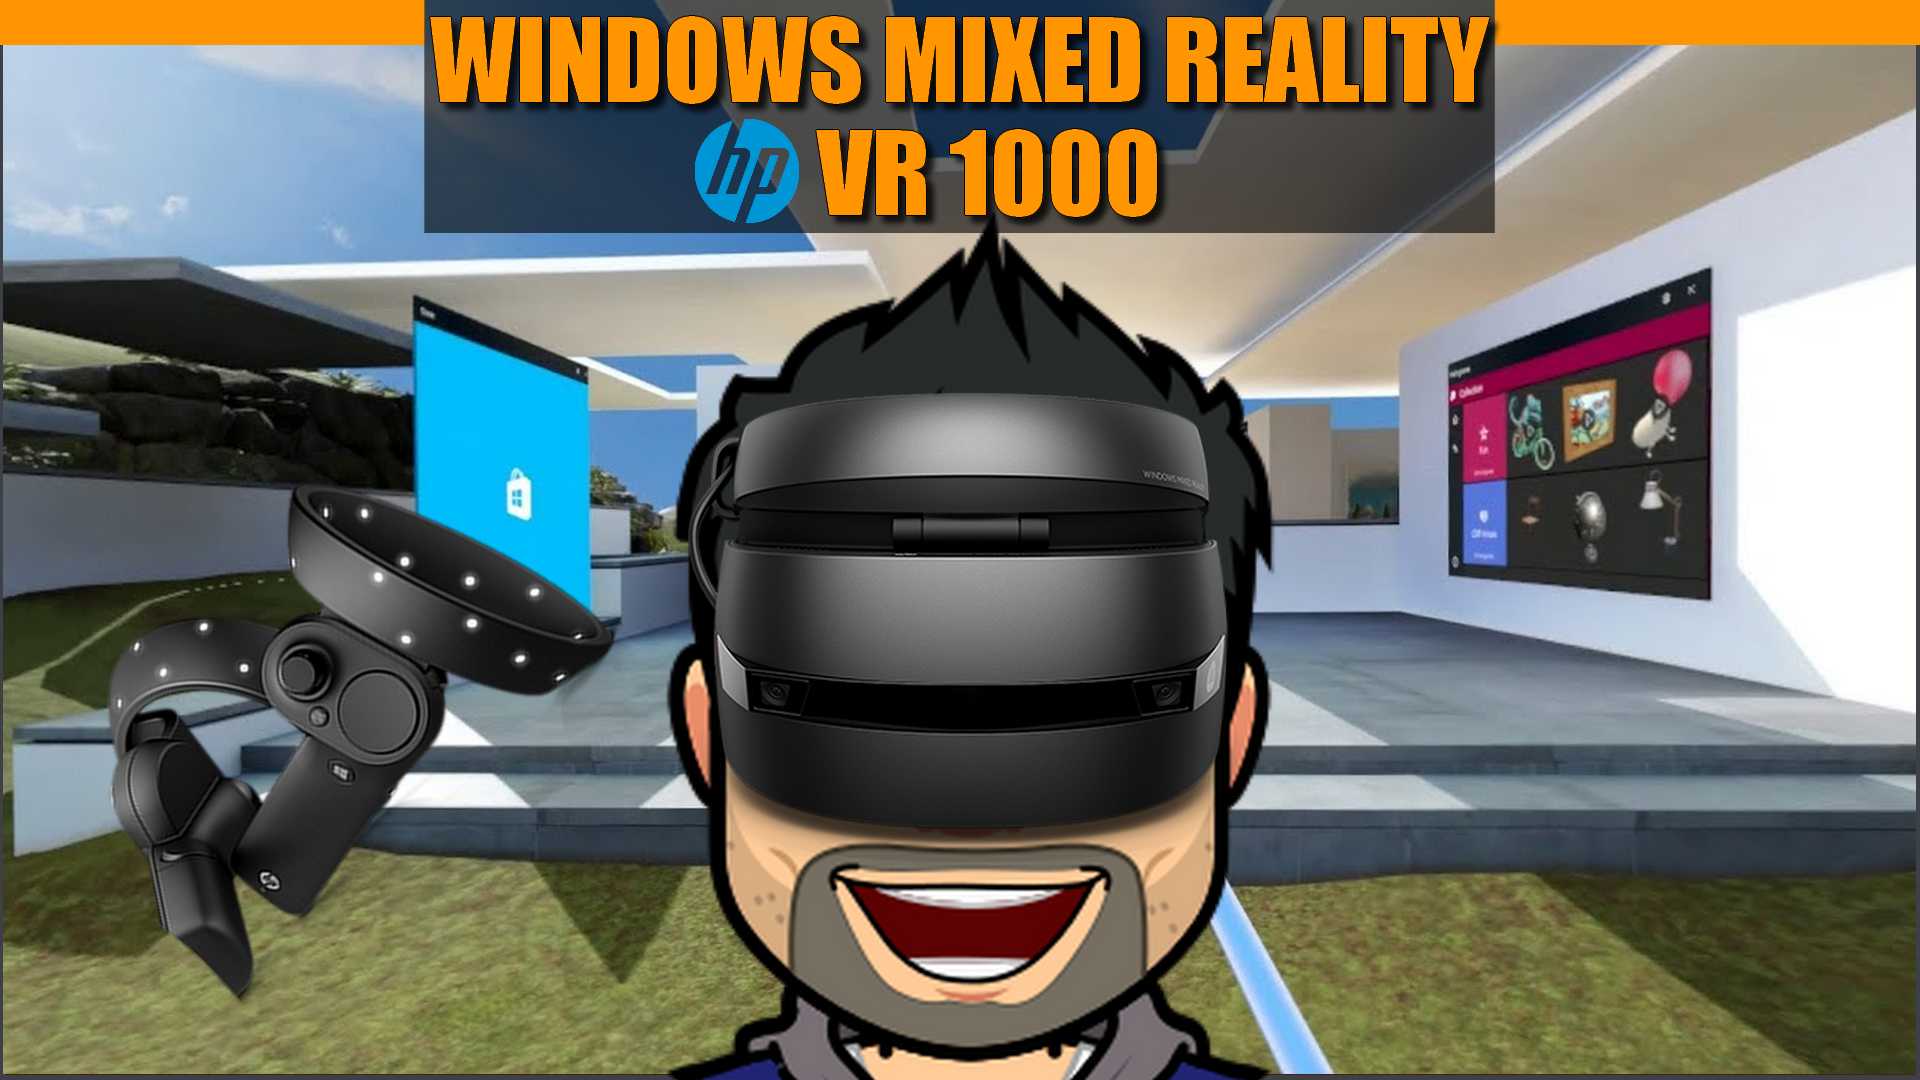 Présentation et impressions sur le casque VR Windows Mixed Reality HP VR1000 + Jeux